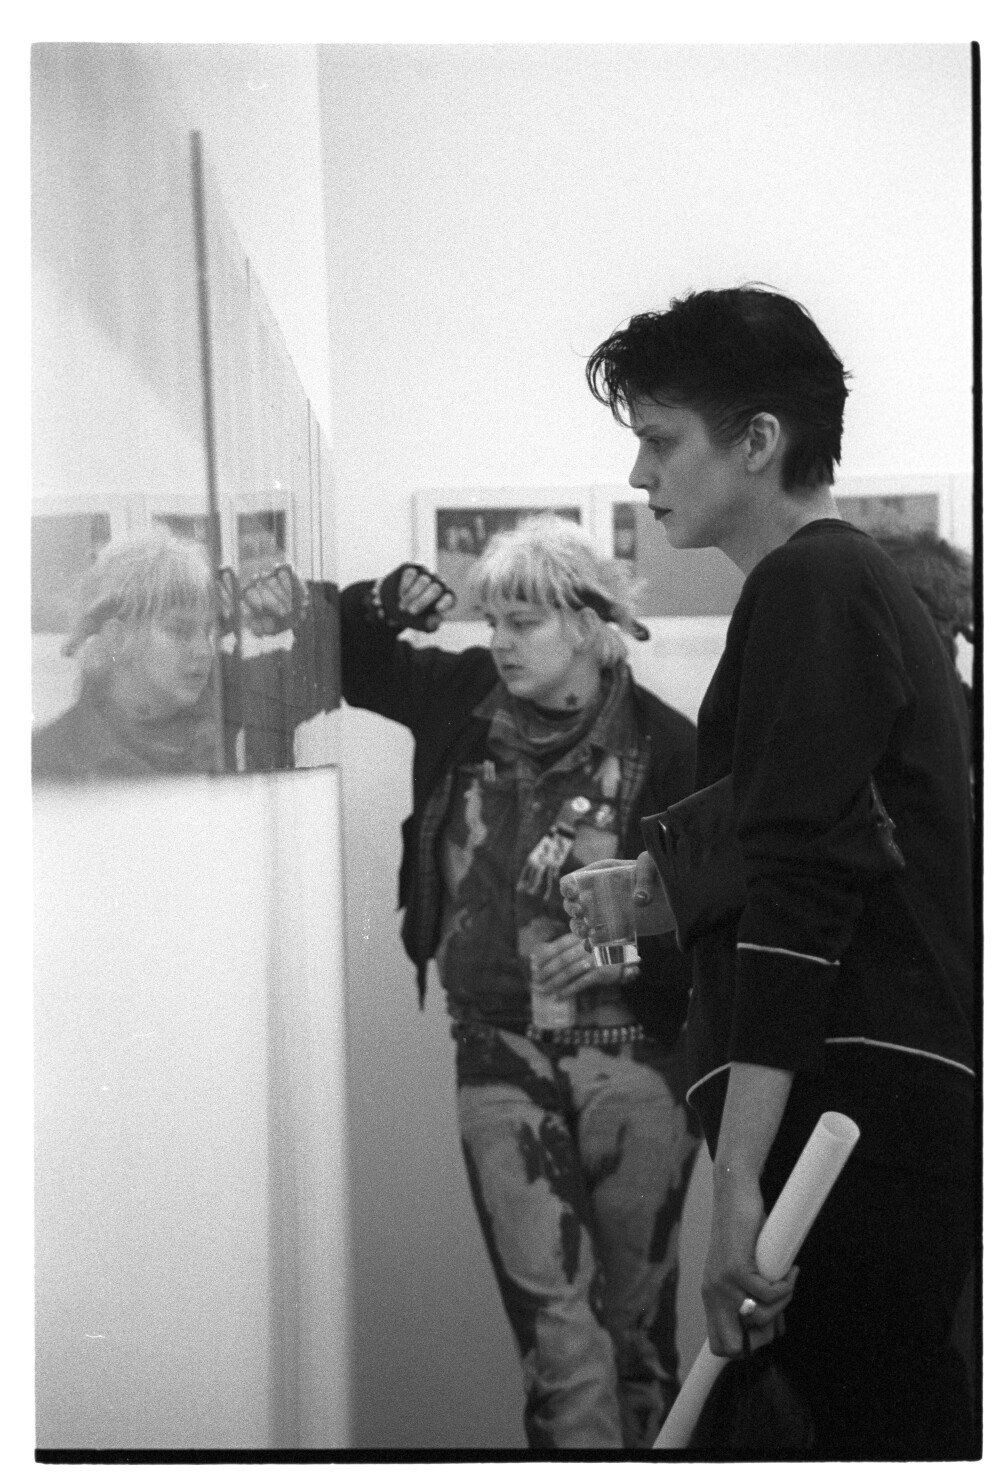 Die Tödliche Doris 06.03.1986 I N 5 (Rita Maier / Schwules Museum Berlin RR-P)